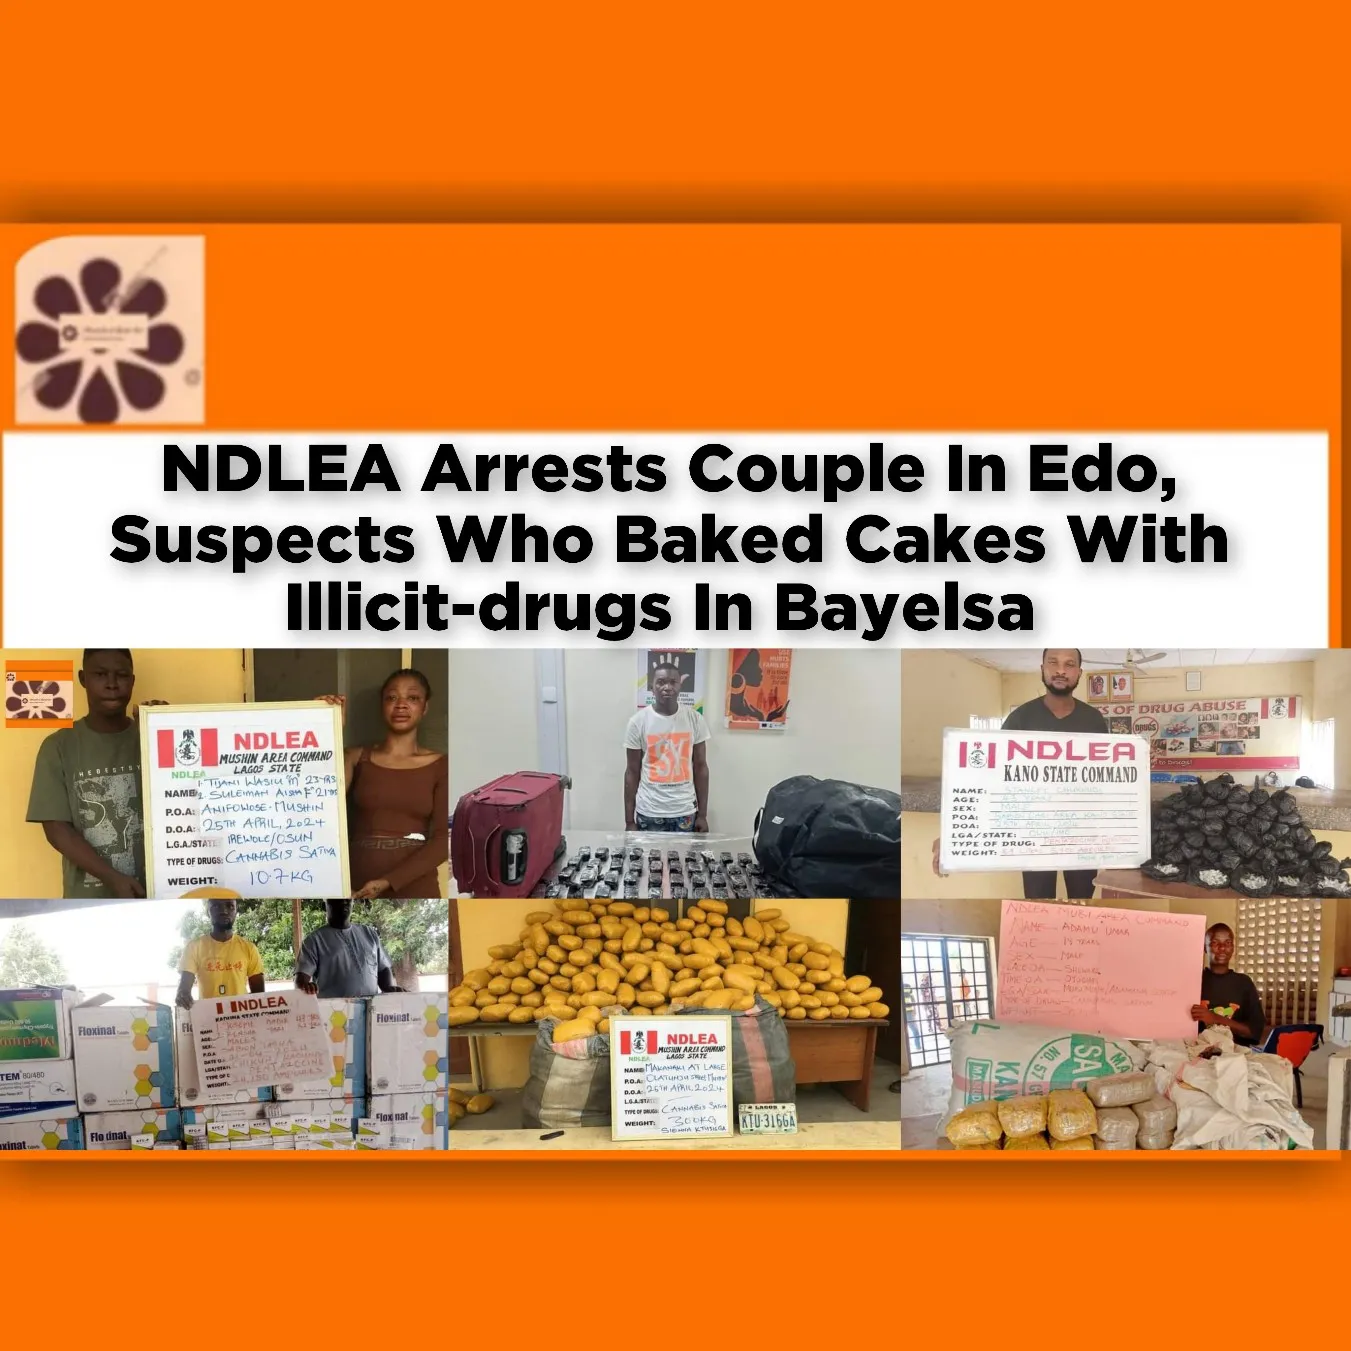 NDLEA Arrests Couple In Edo, Suspects Who Baked Cakes With Illicit-drugs In Bayelsa ~ OsazuwaAkonedo #Ubah